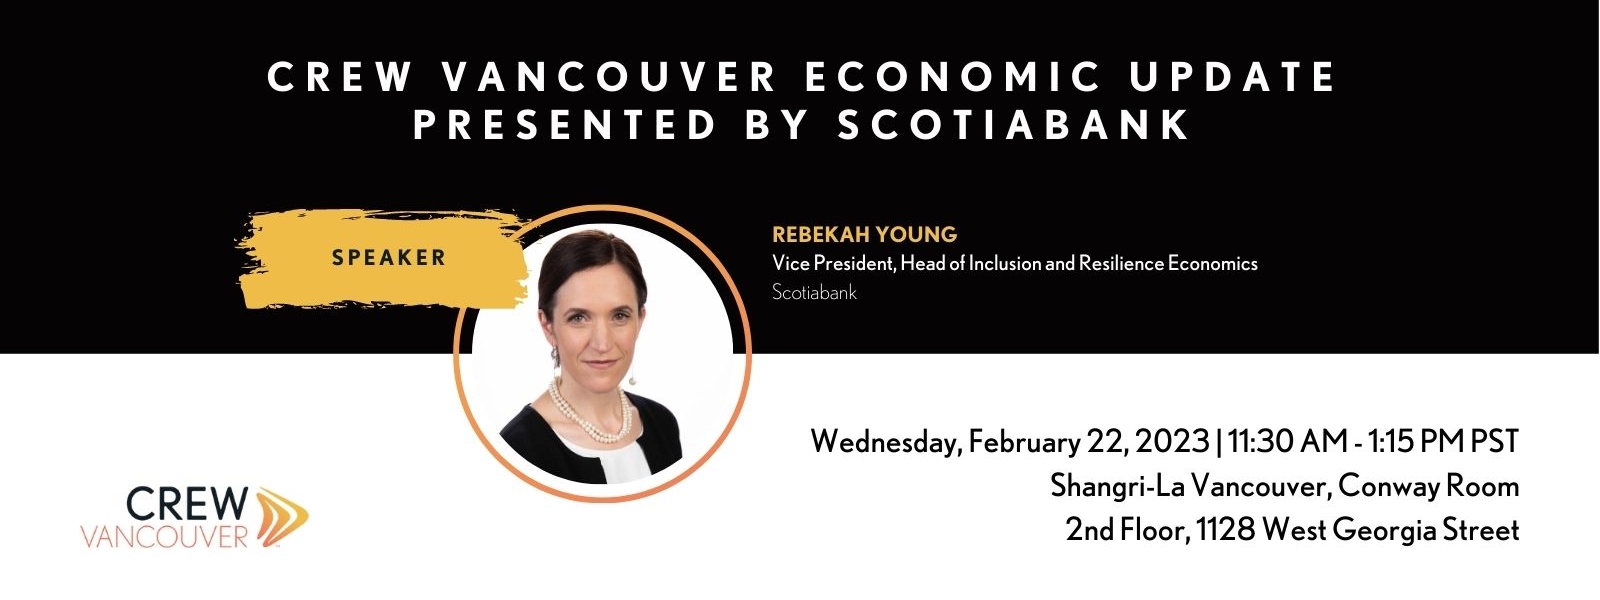 CREW Vancouver Event Economic Update 2023 02 22 WEB